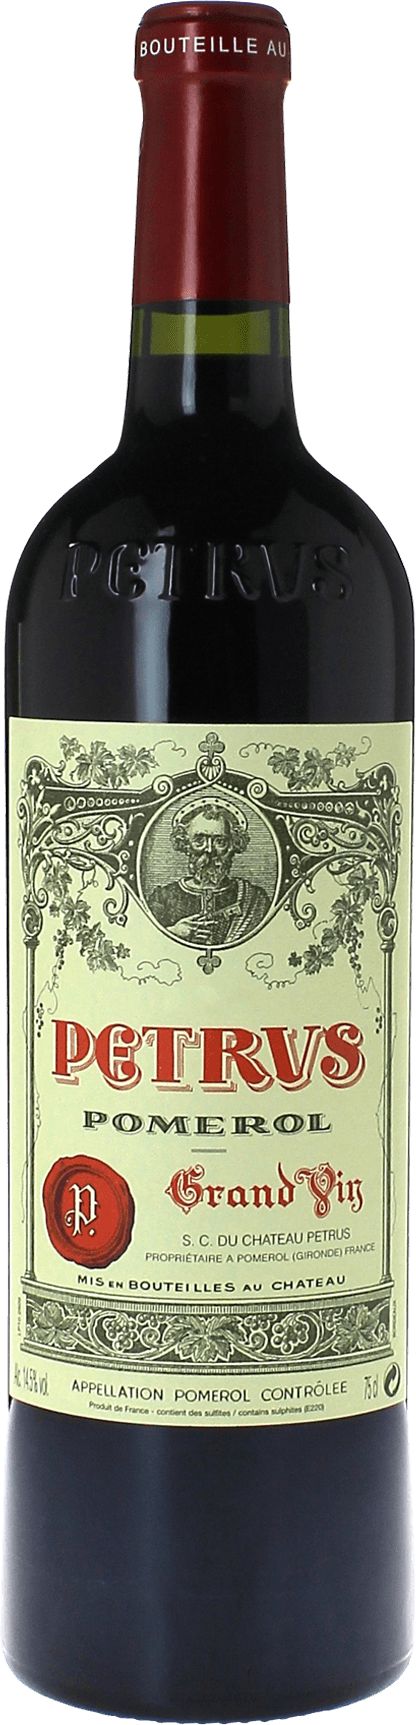 Petrus pomerol 2004  Pomerol, Bordeaux rouge